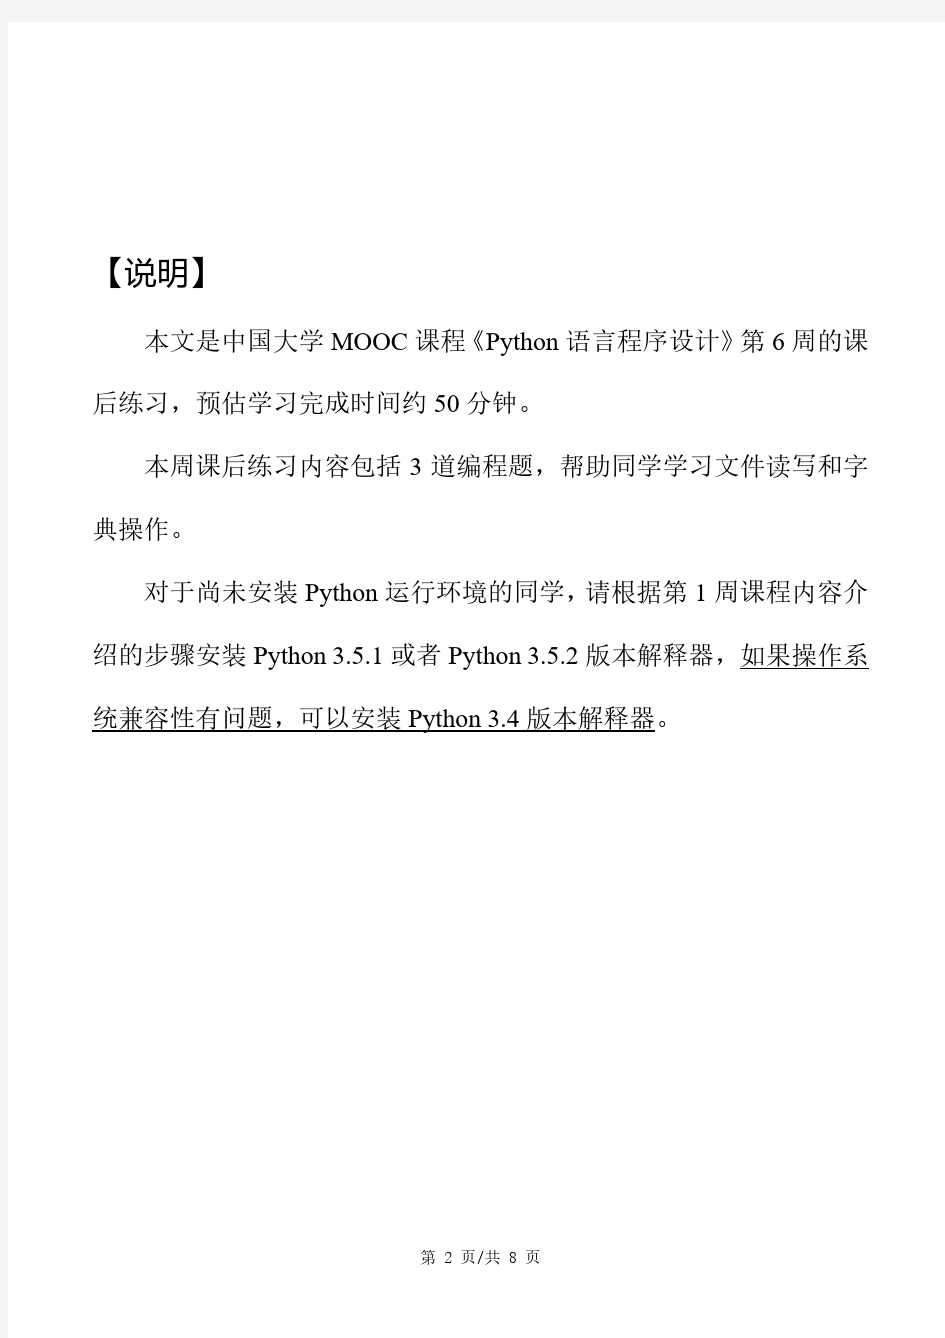 精品学习笔记 Python入门提升 北京理工大学：《Python语言程序设计》- 6.9.1 课后练习(第6周)